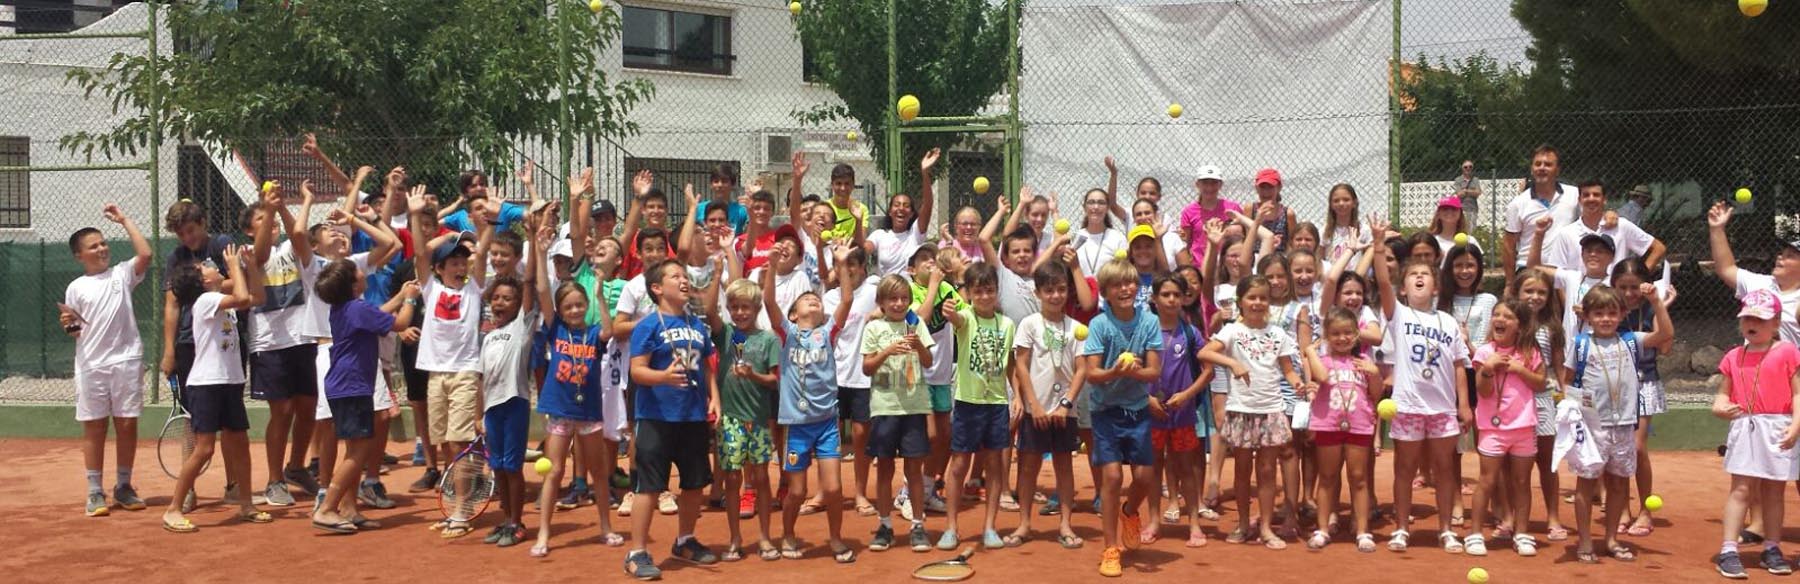 Academia Tenis 92. Campus tenis verano en náquera valencia con ingles intensivo